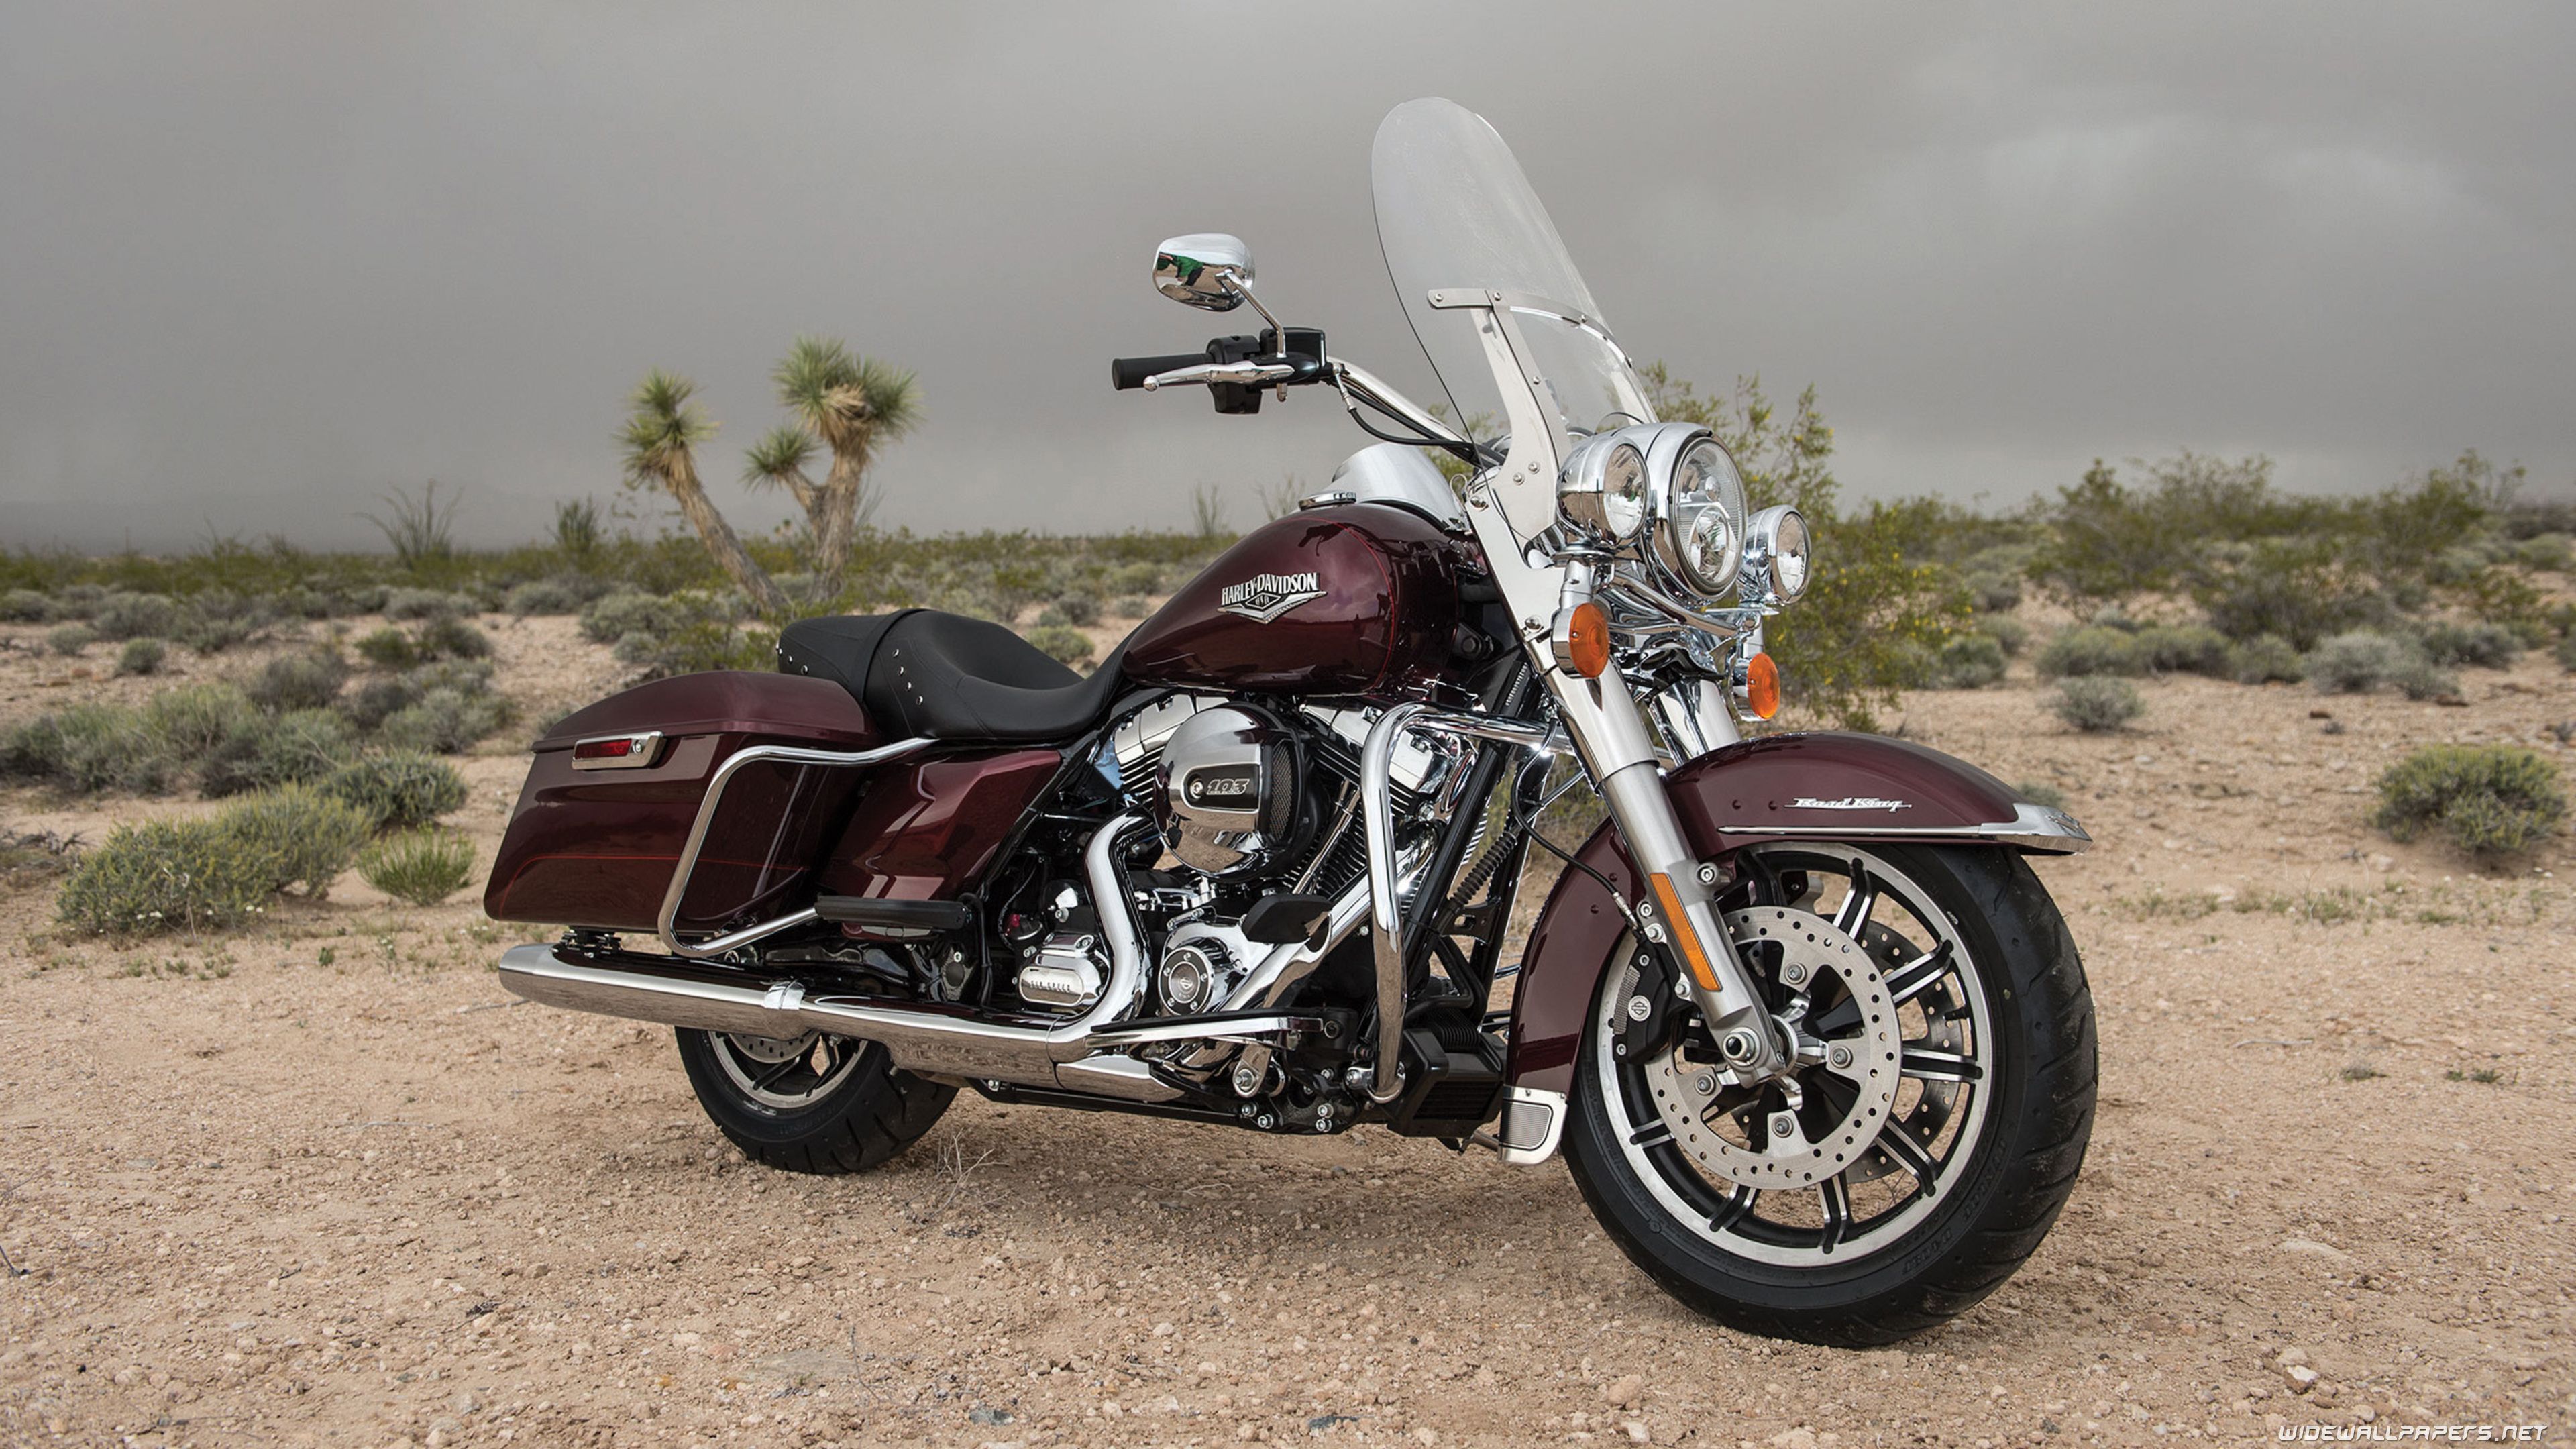 Harley Davidson Touring Motorcycle Desktop Wallpaper 4K Ultra HD